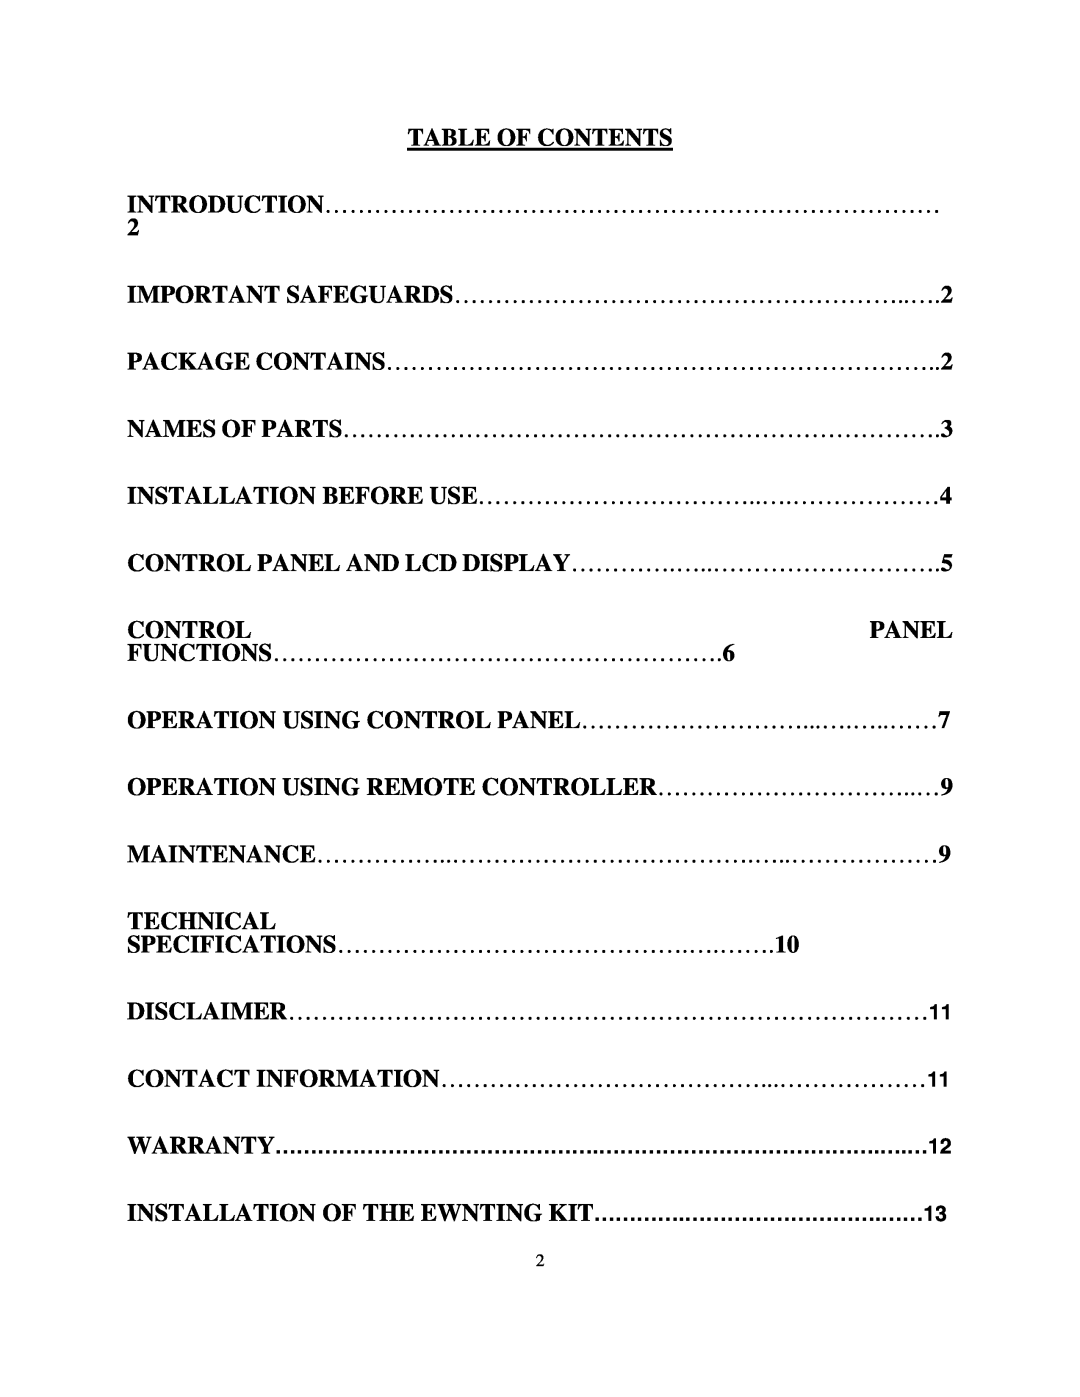 Soleus Air MAC-12K/10K owner manual Table Of Contents 